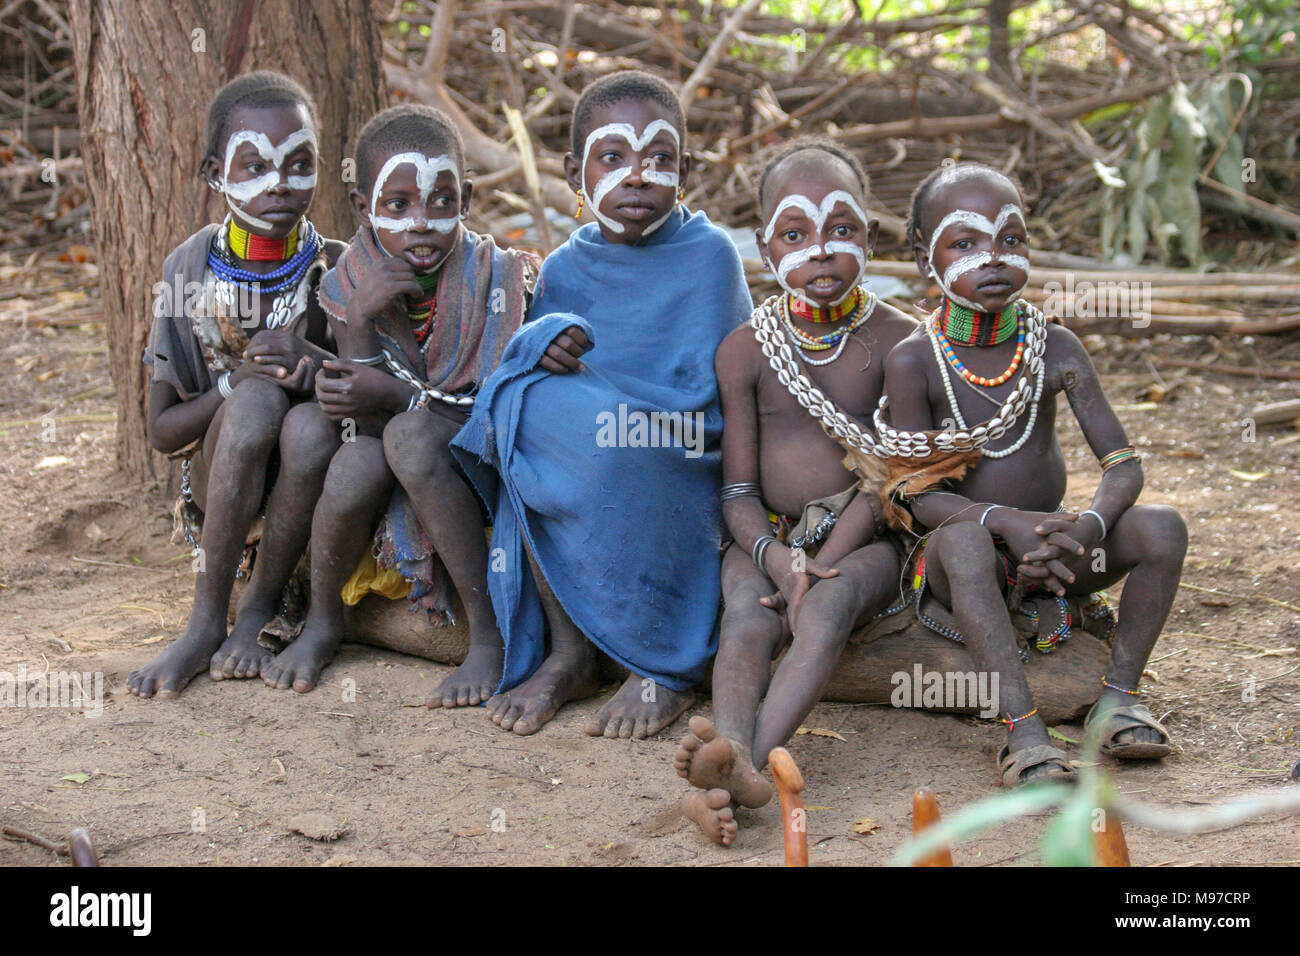 Les jeunes enfants de la tribu Mursi. La zone d'Omo Debub, l'Éthiopie, près de la frontière soudanaise. Banque D'Images